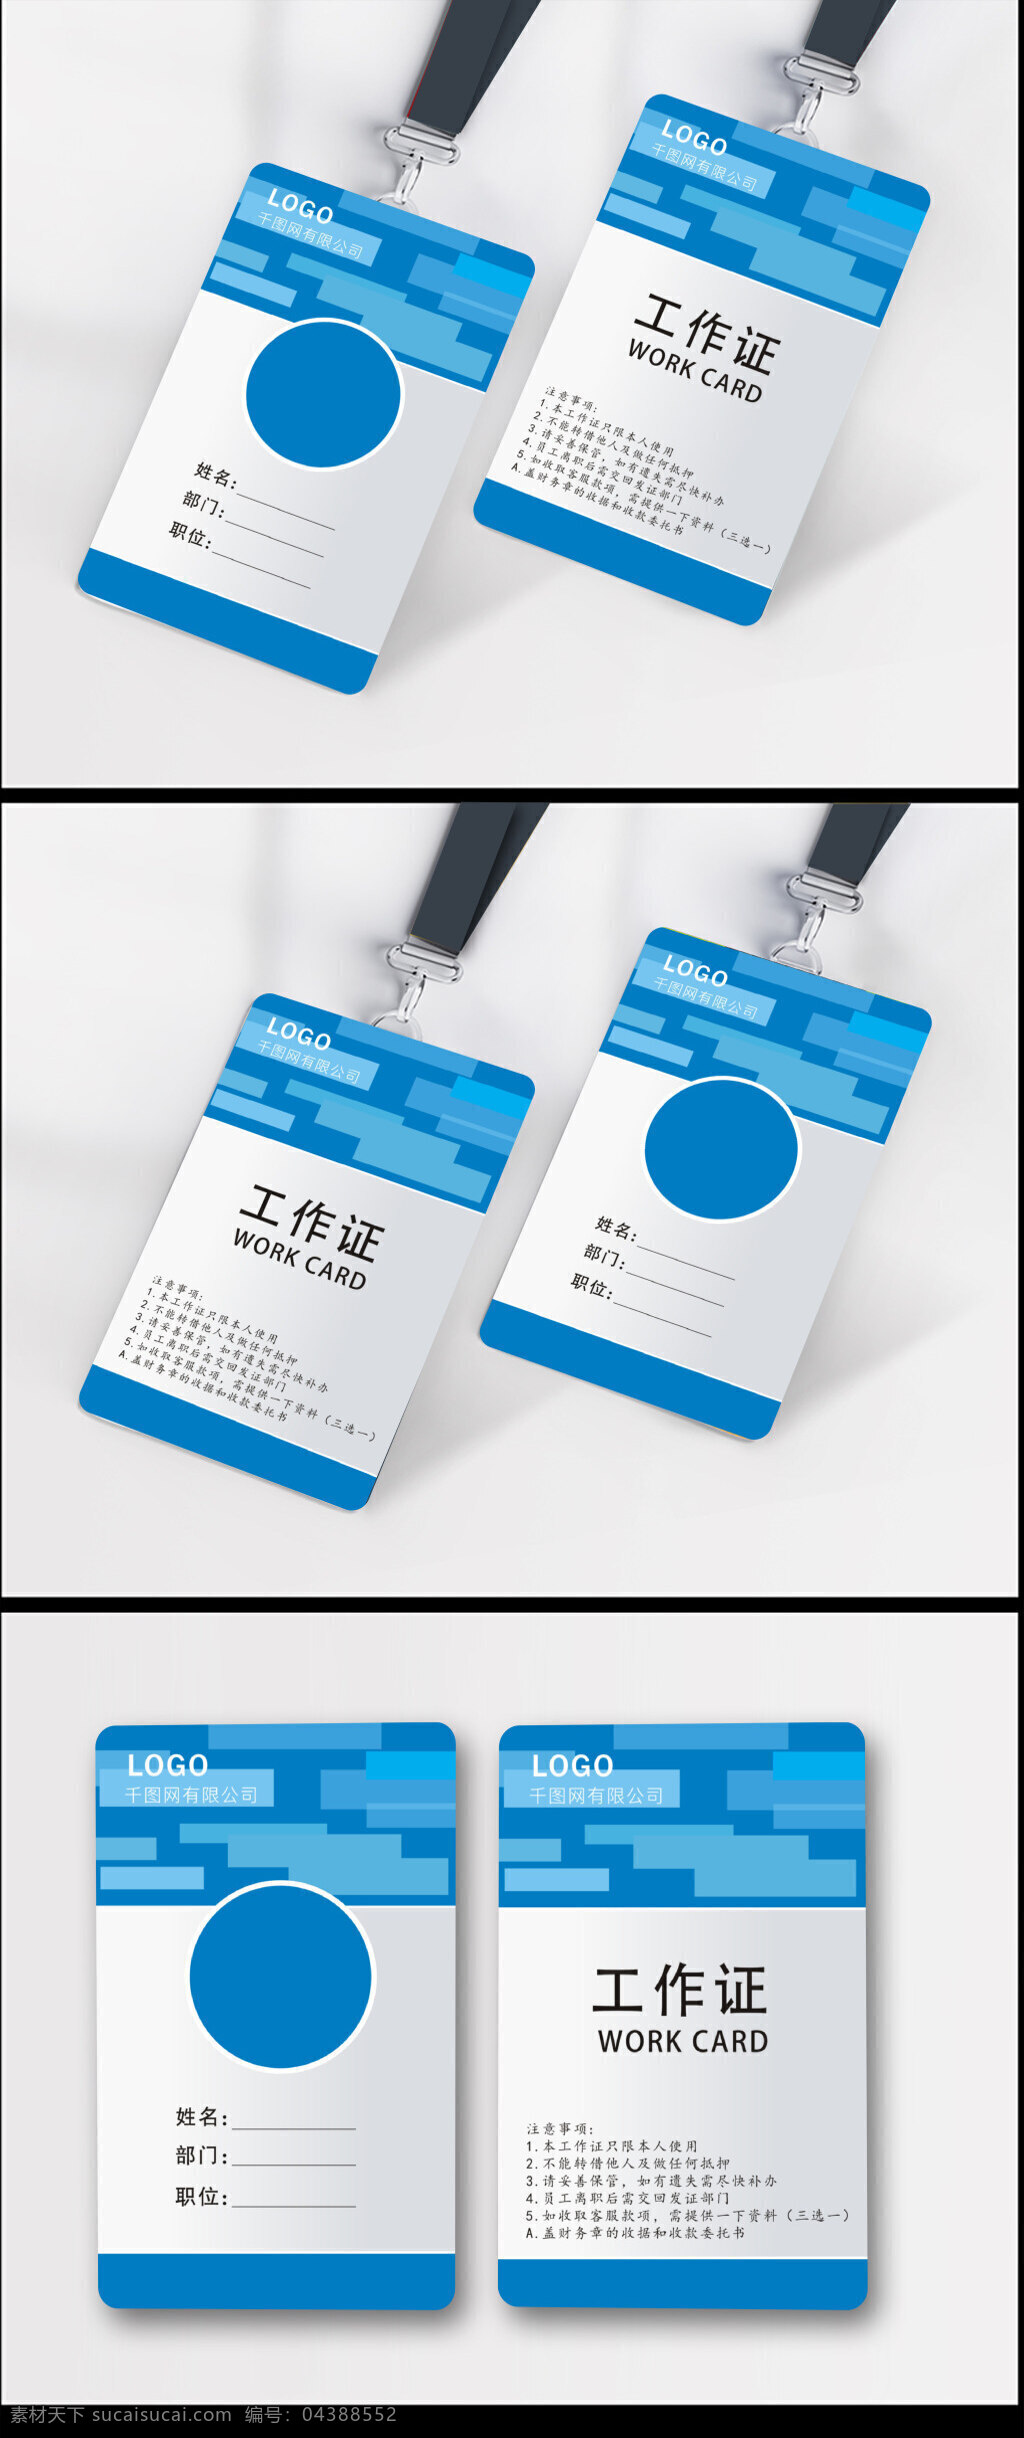 蓝色 企业 工作证 模板 工作证模板 工作证设计 几何设计 几何图形 简洁工作证 卡片设计 蓝色工作证 蓝色卡片 名片设计 时尚工作证